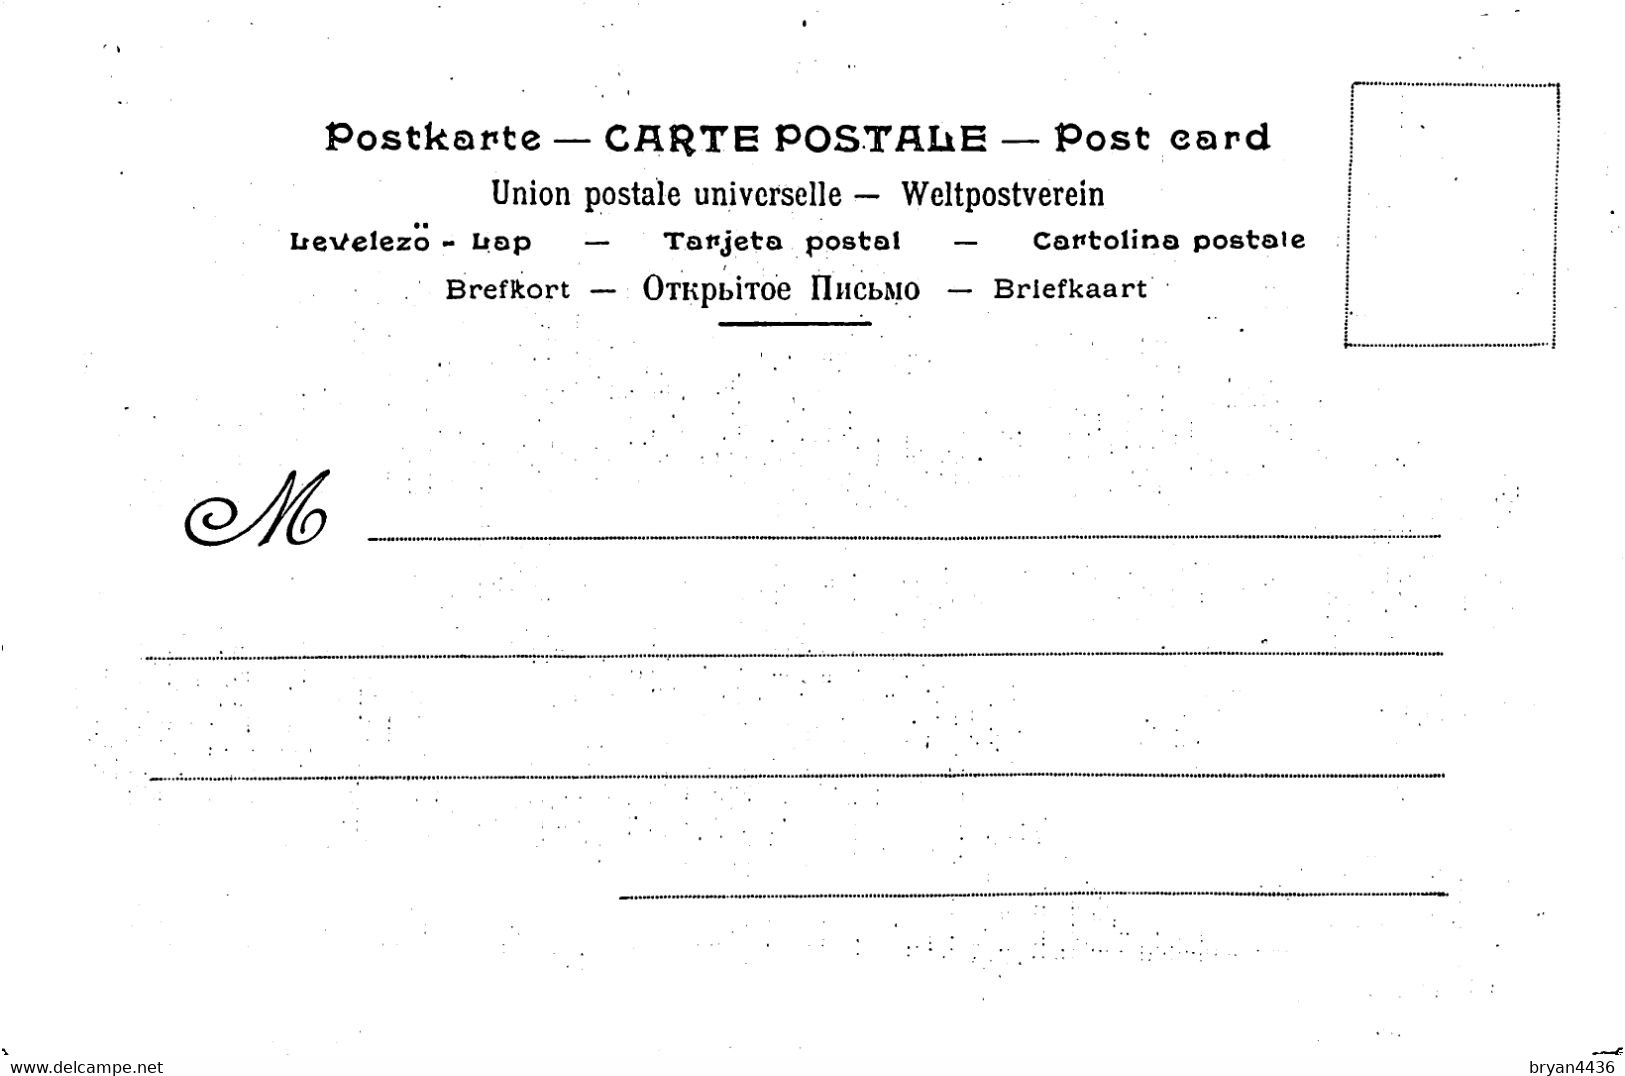 ART NOUVEAU POST CARD - COLLECTION JOB - J. CHERET - CALENDRIER - 1896 - TRES BON ETAT. - Chéret